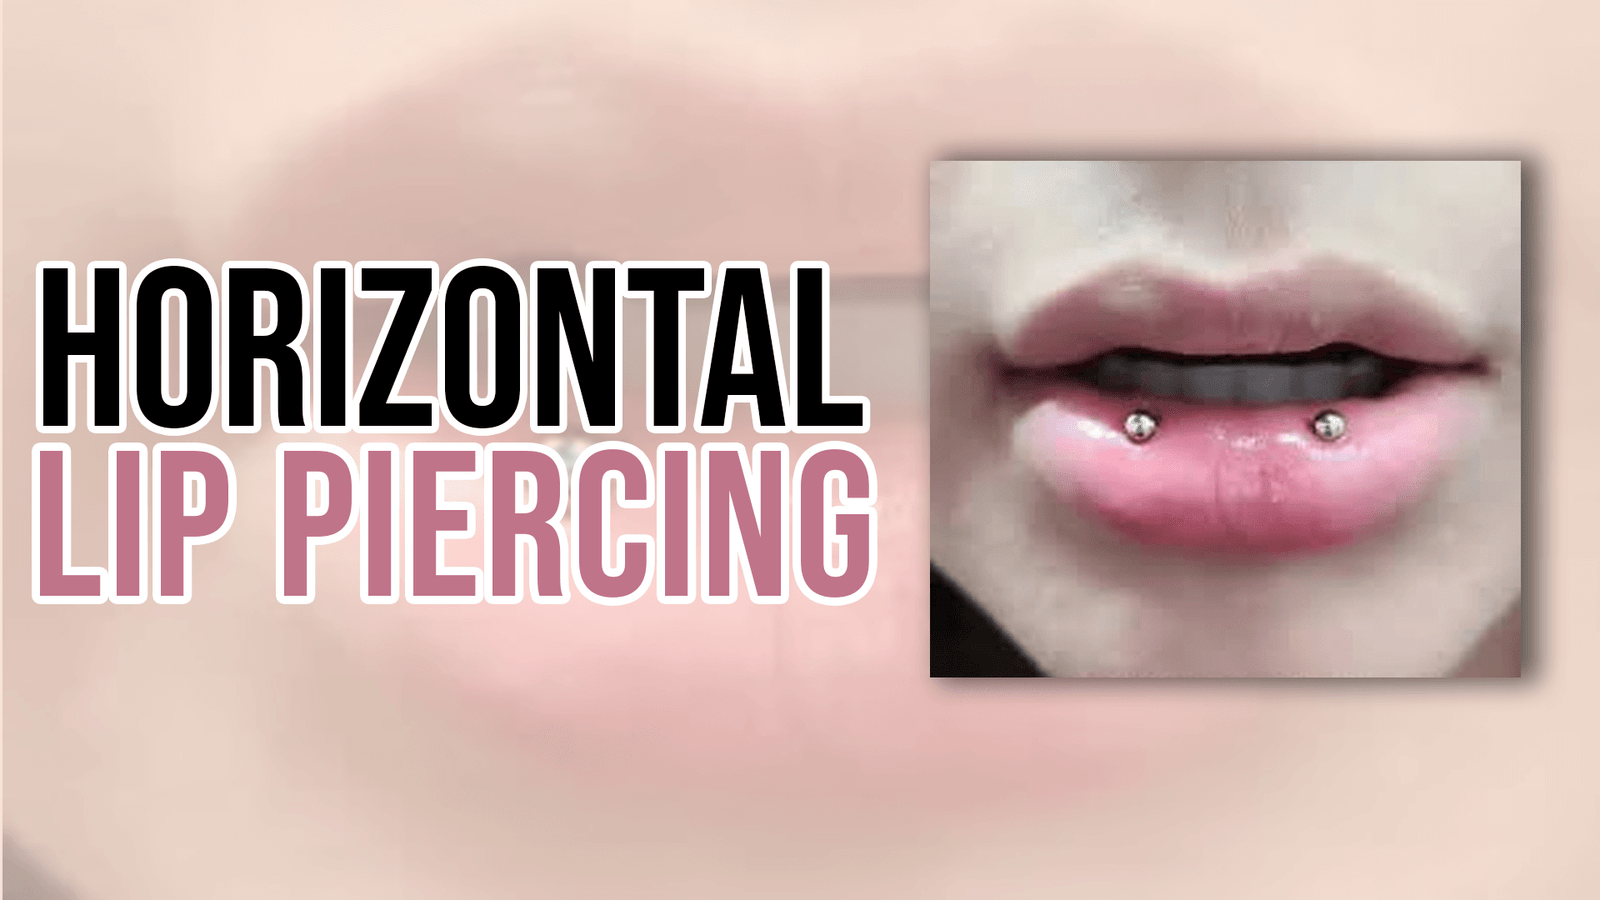 Horizontal Lip Piercing